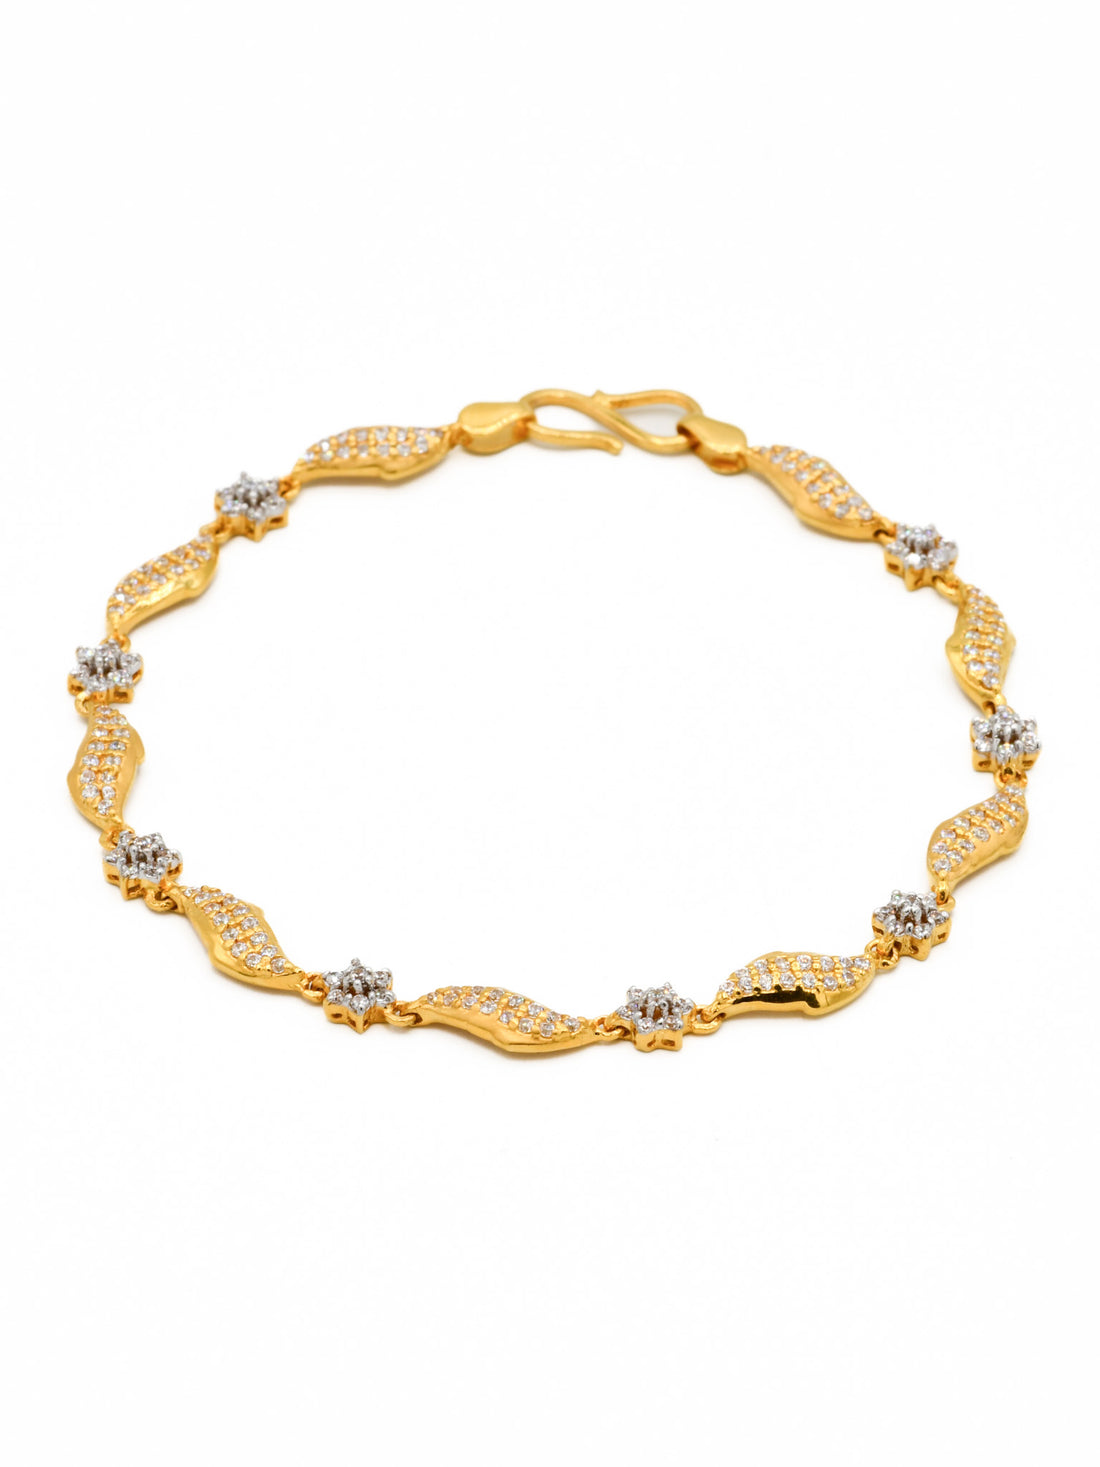 22ct Gold Two tone CZ Ladies Bracelet - Roop Darshan